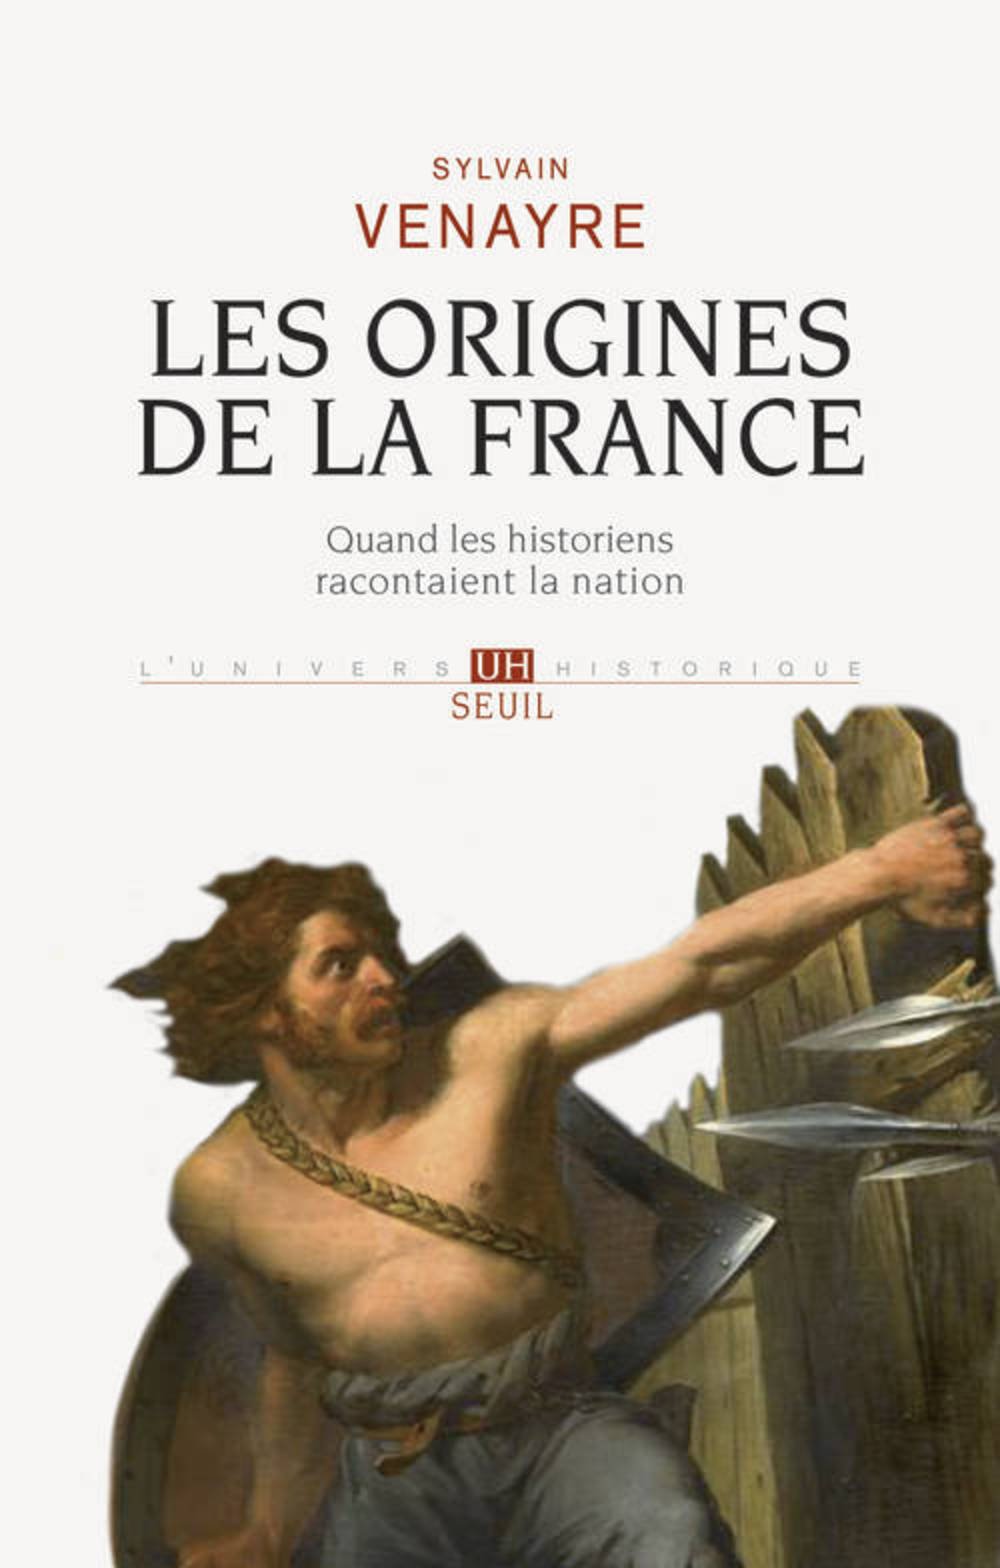 Les origines de la France. Quand les historiens racontaient la nation, 2013, 425 p.